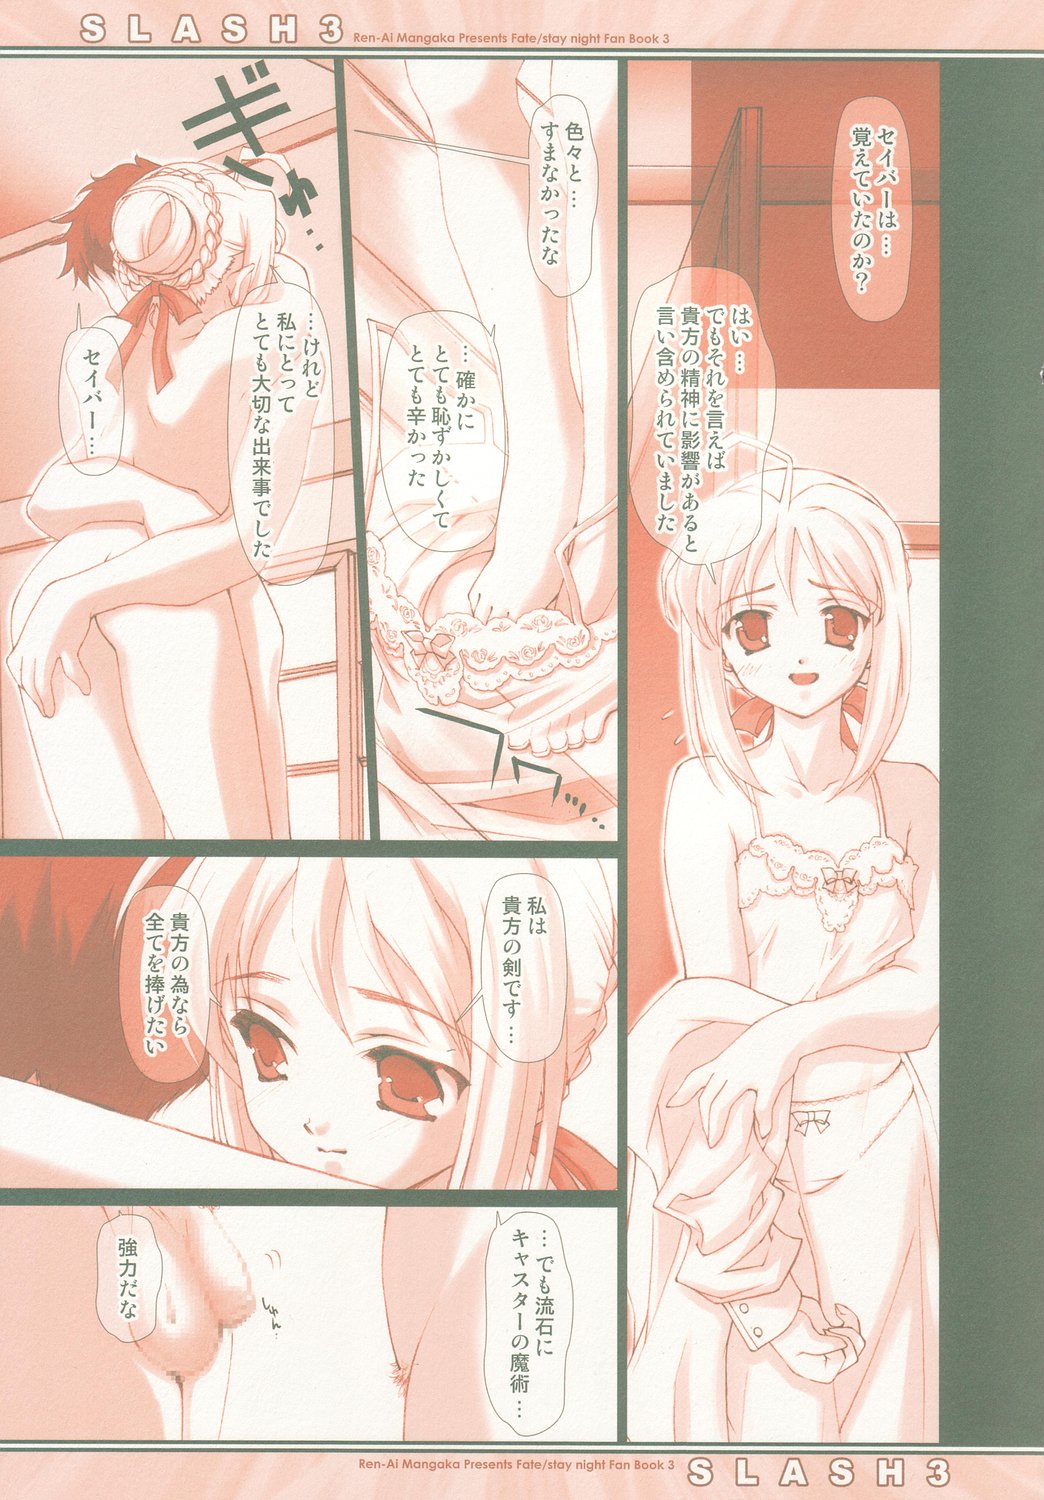 (C66) [Renai Mangaka (Naruse Hirofumi)] SLASH 3 (Fate/stay night) page 10 full